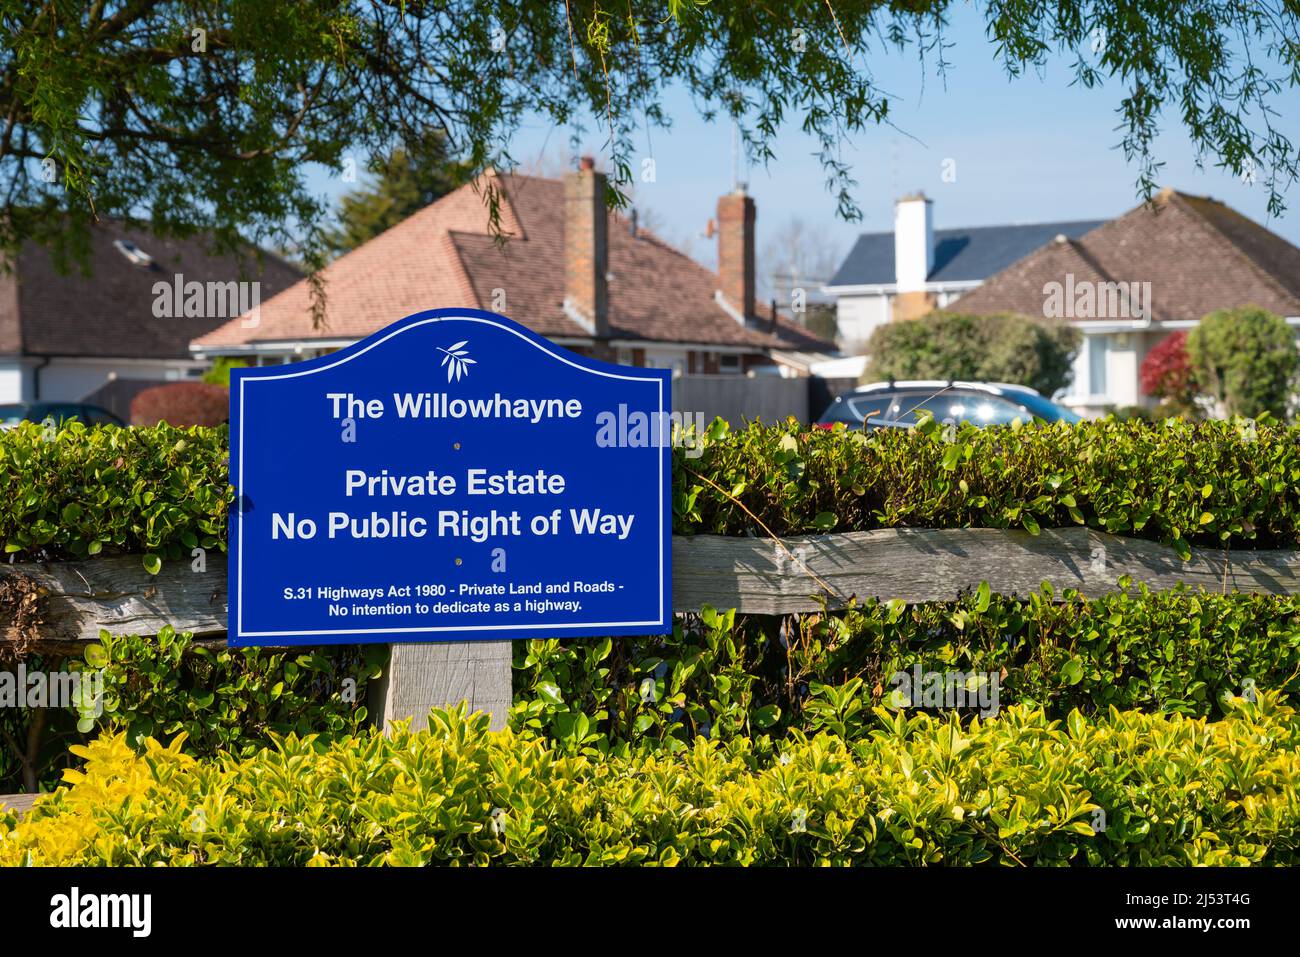 Panneau à l'entrée de Willowhayne Private Estate à East Preston, West Sussex, Angleterre, Royaume-Uni ne montrant aucun droit de passage public. Banque D'Images